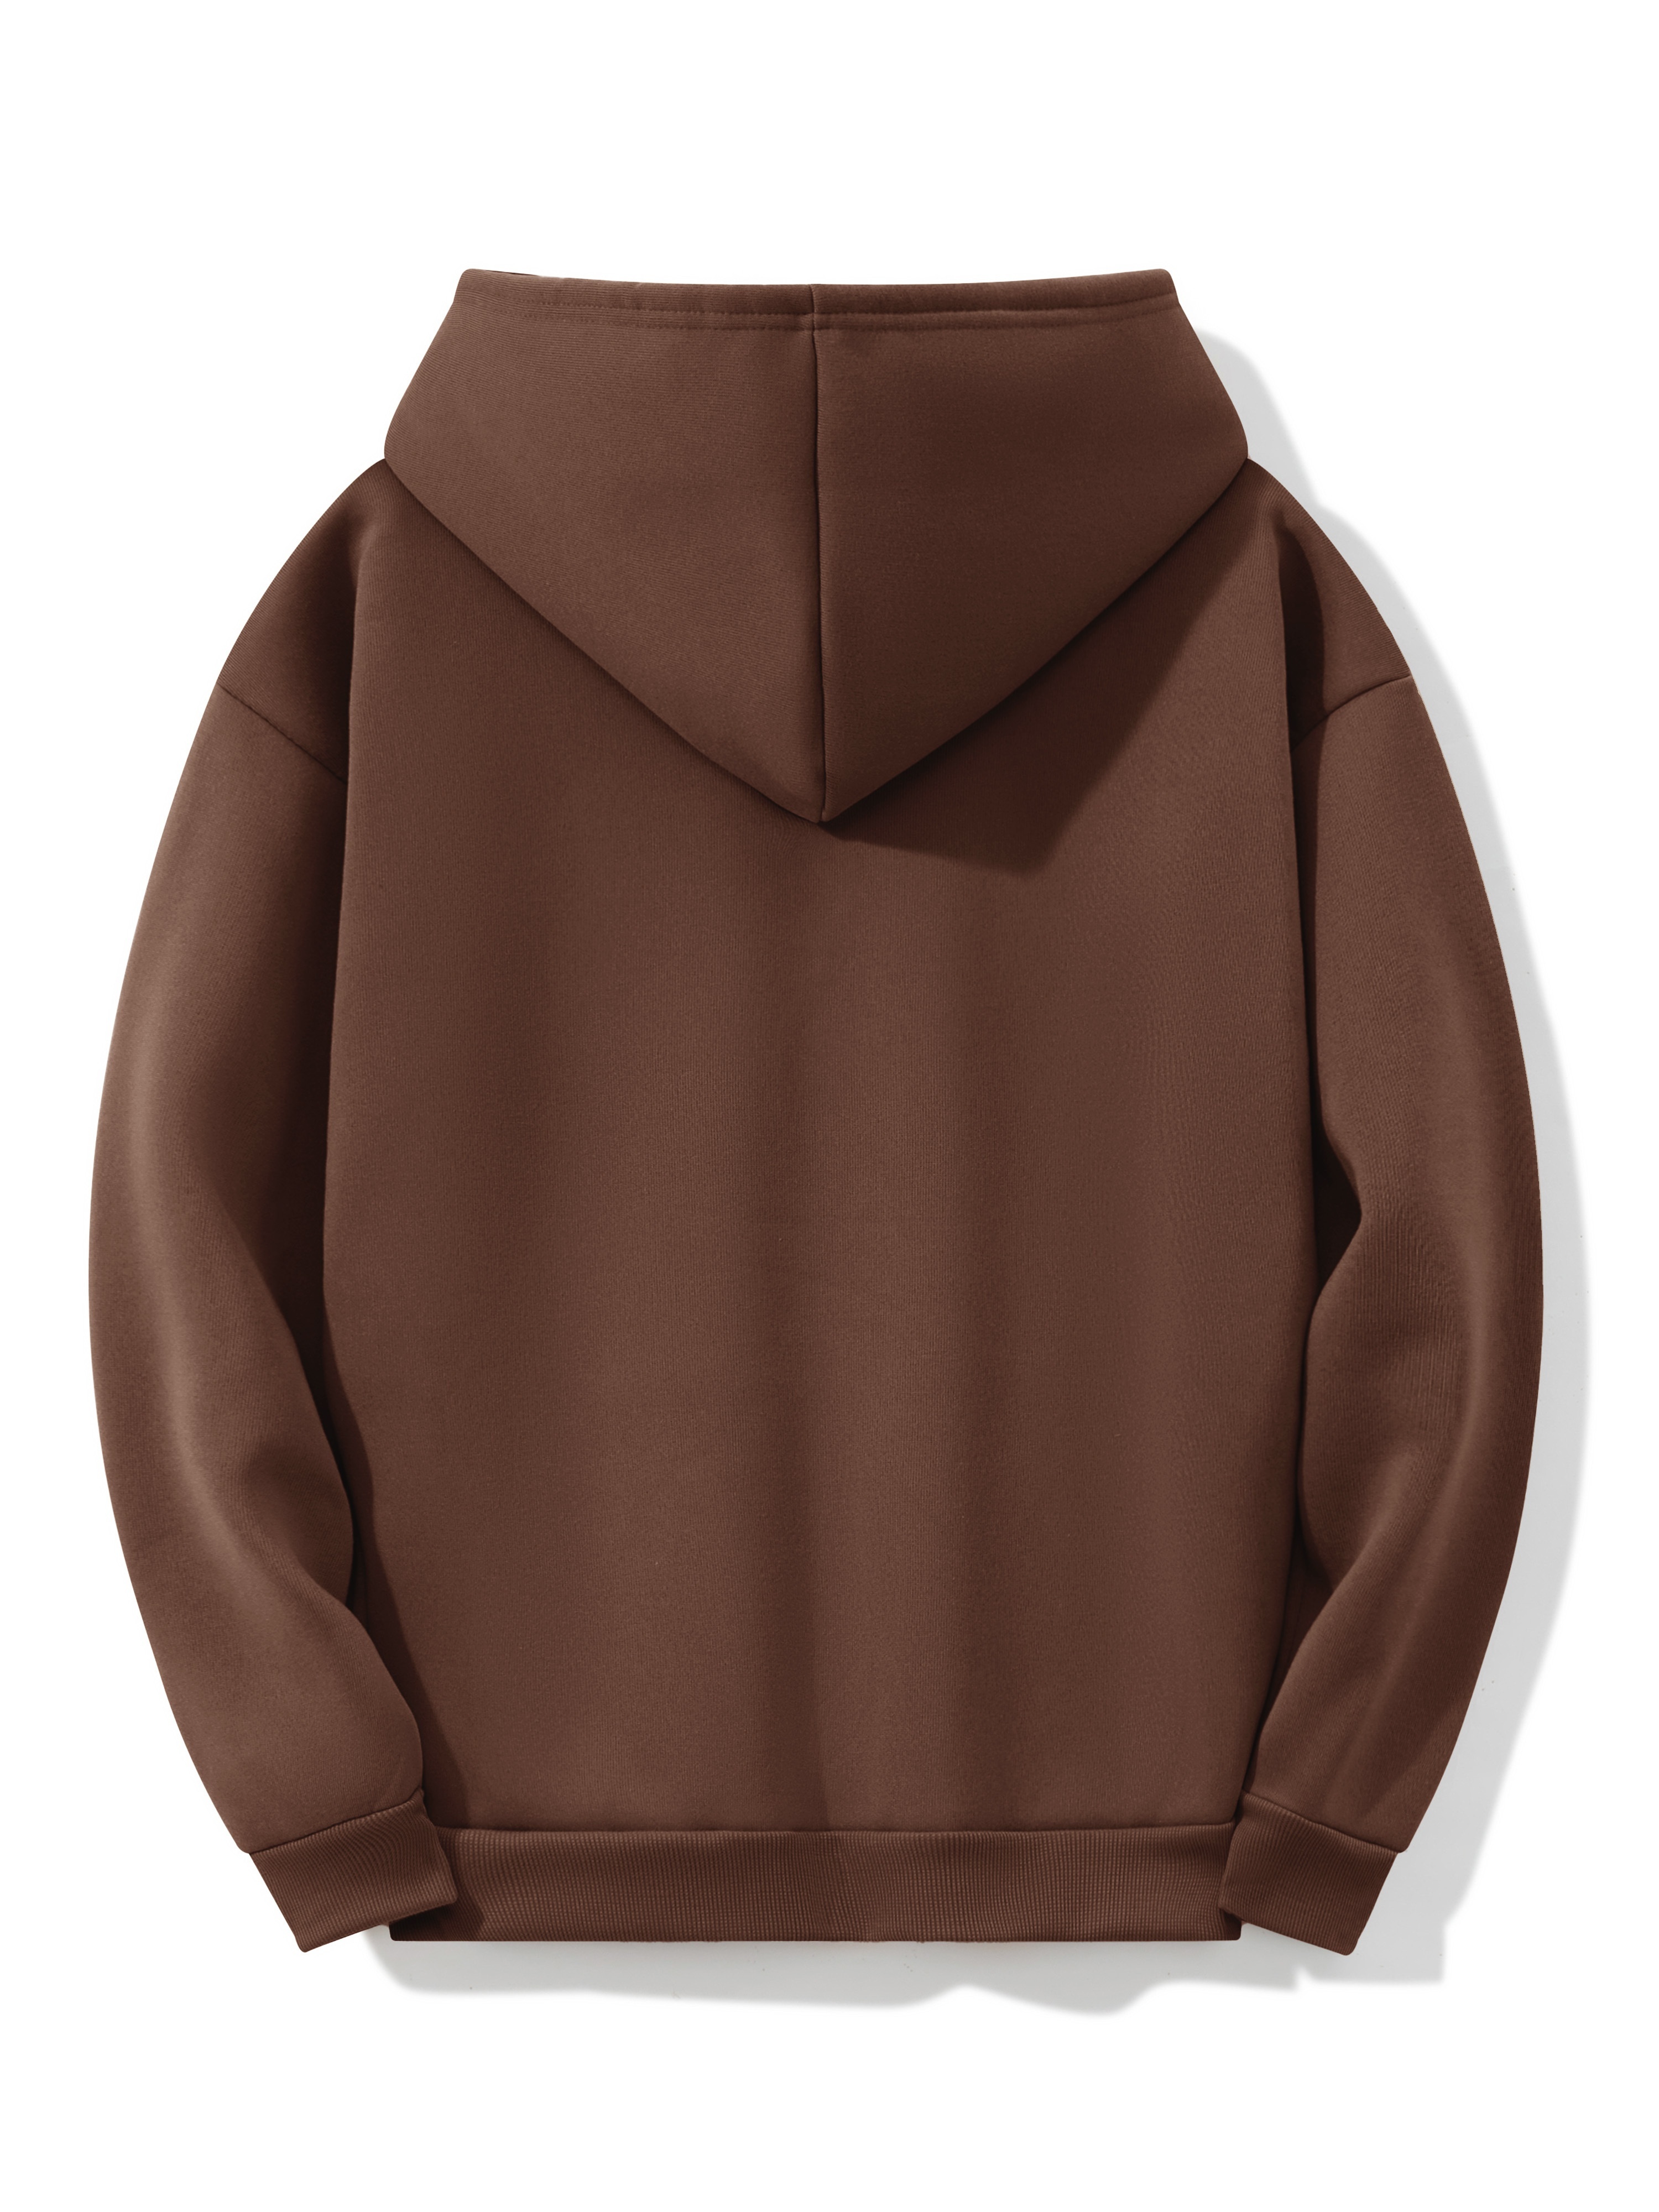 New York Mens Hoodies Pullover Print Hooded Jacket Long Sleeve Sweatshirt  Kangaroo Pocket Loose Fit with Hood Drop Shoulder